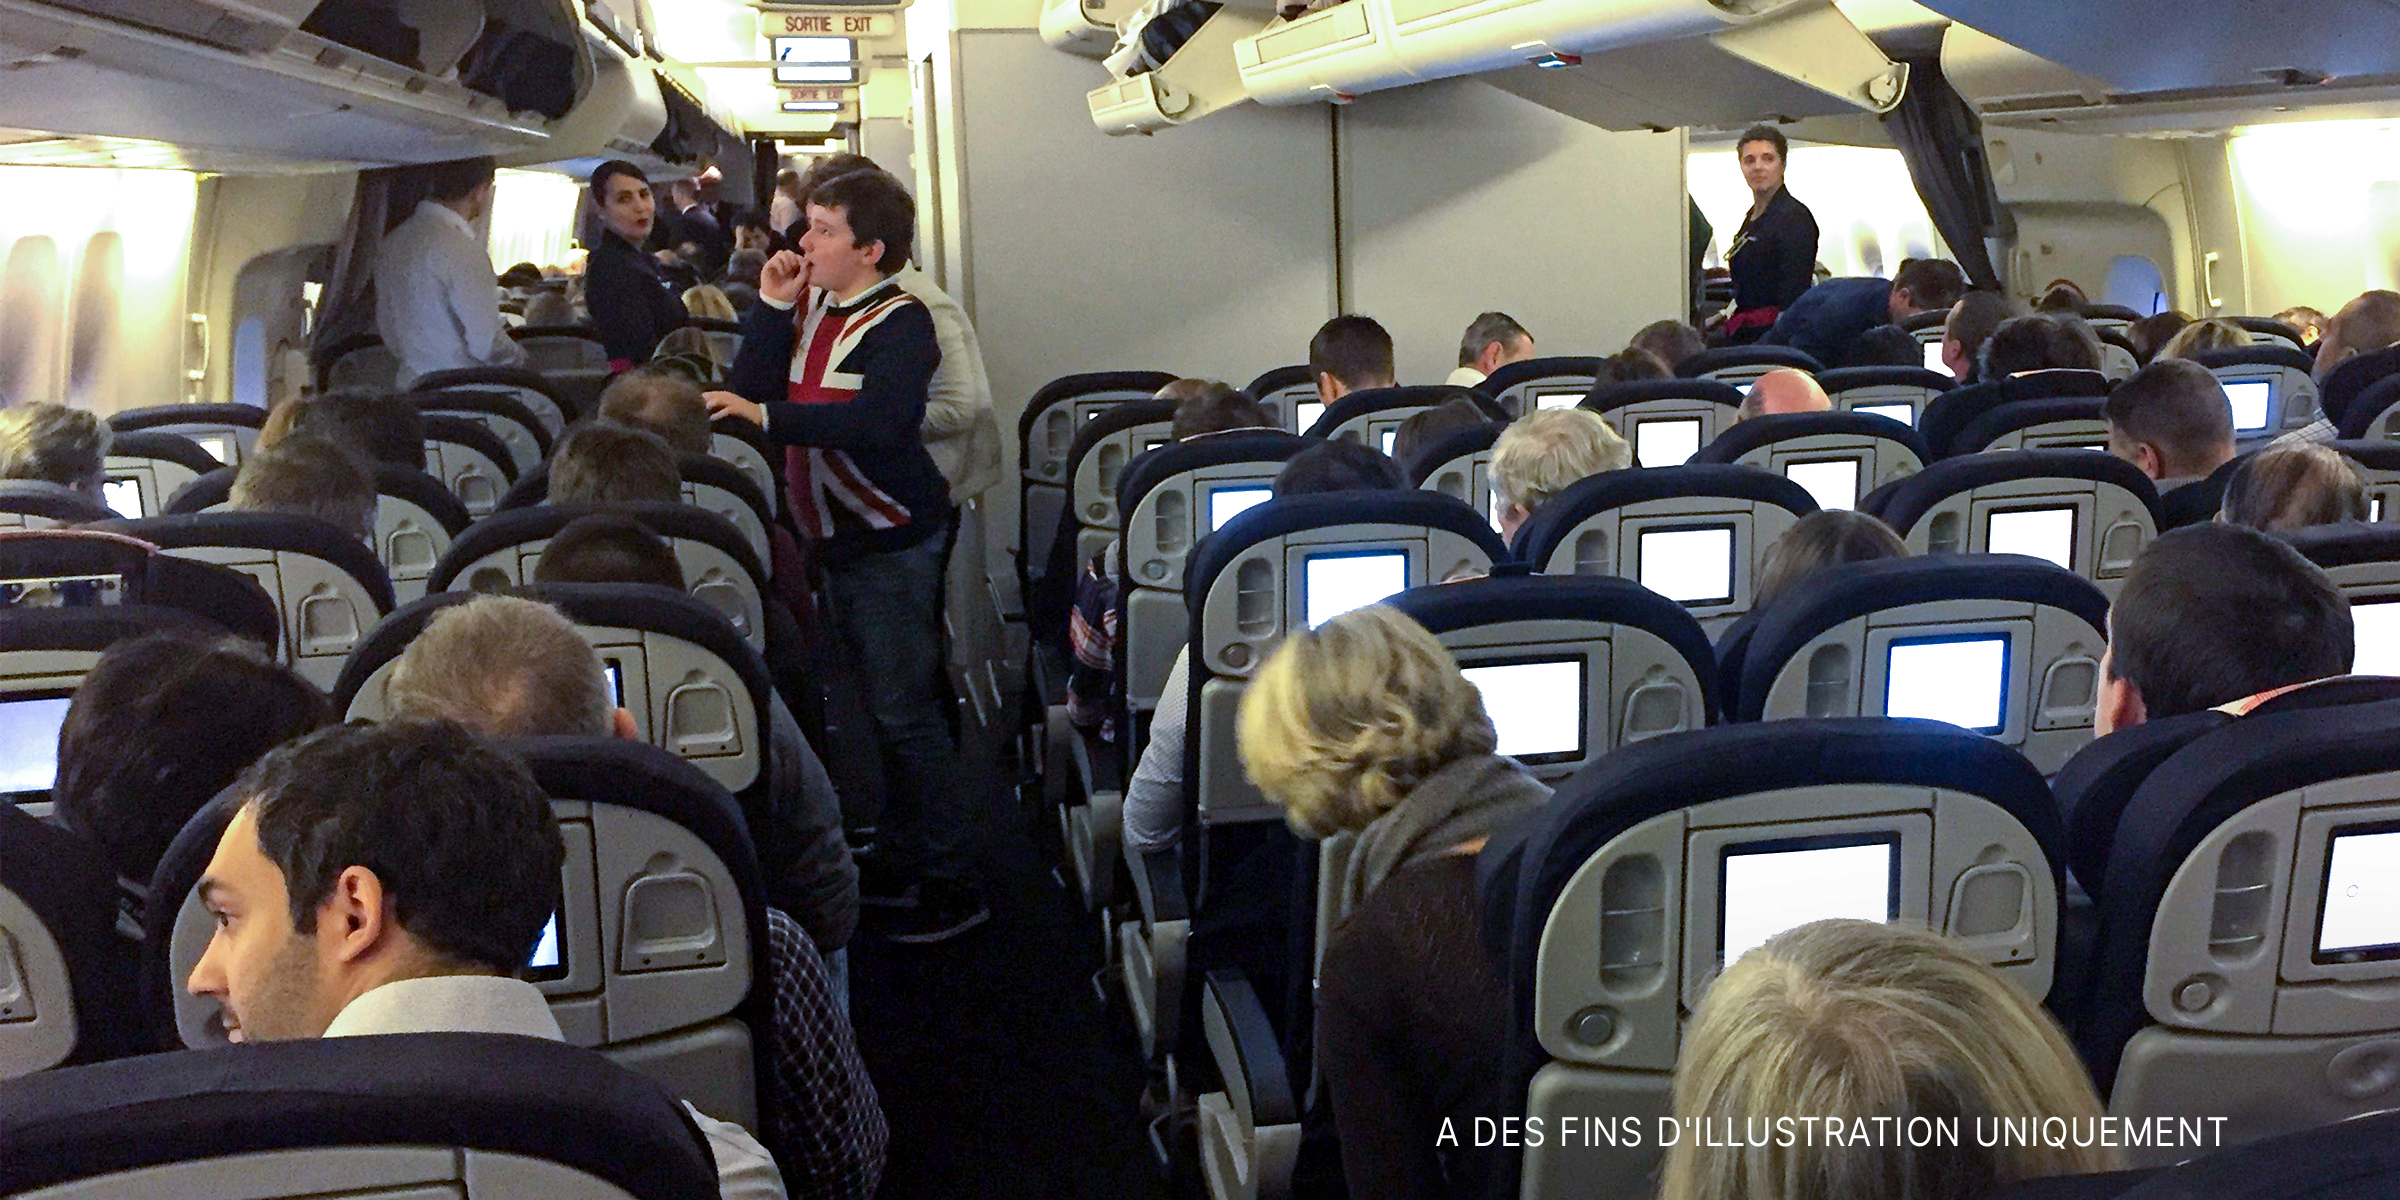 L'intérieur de la cabine d'un avion rempli de passagers et de membres d'équipage | Source : Flickr.com/airlines470/CC BY-SA 2.0